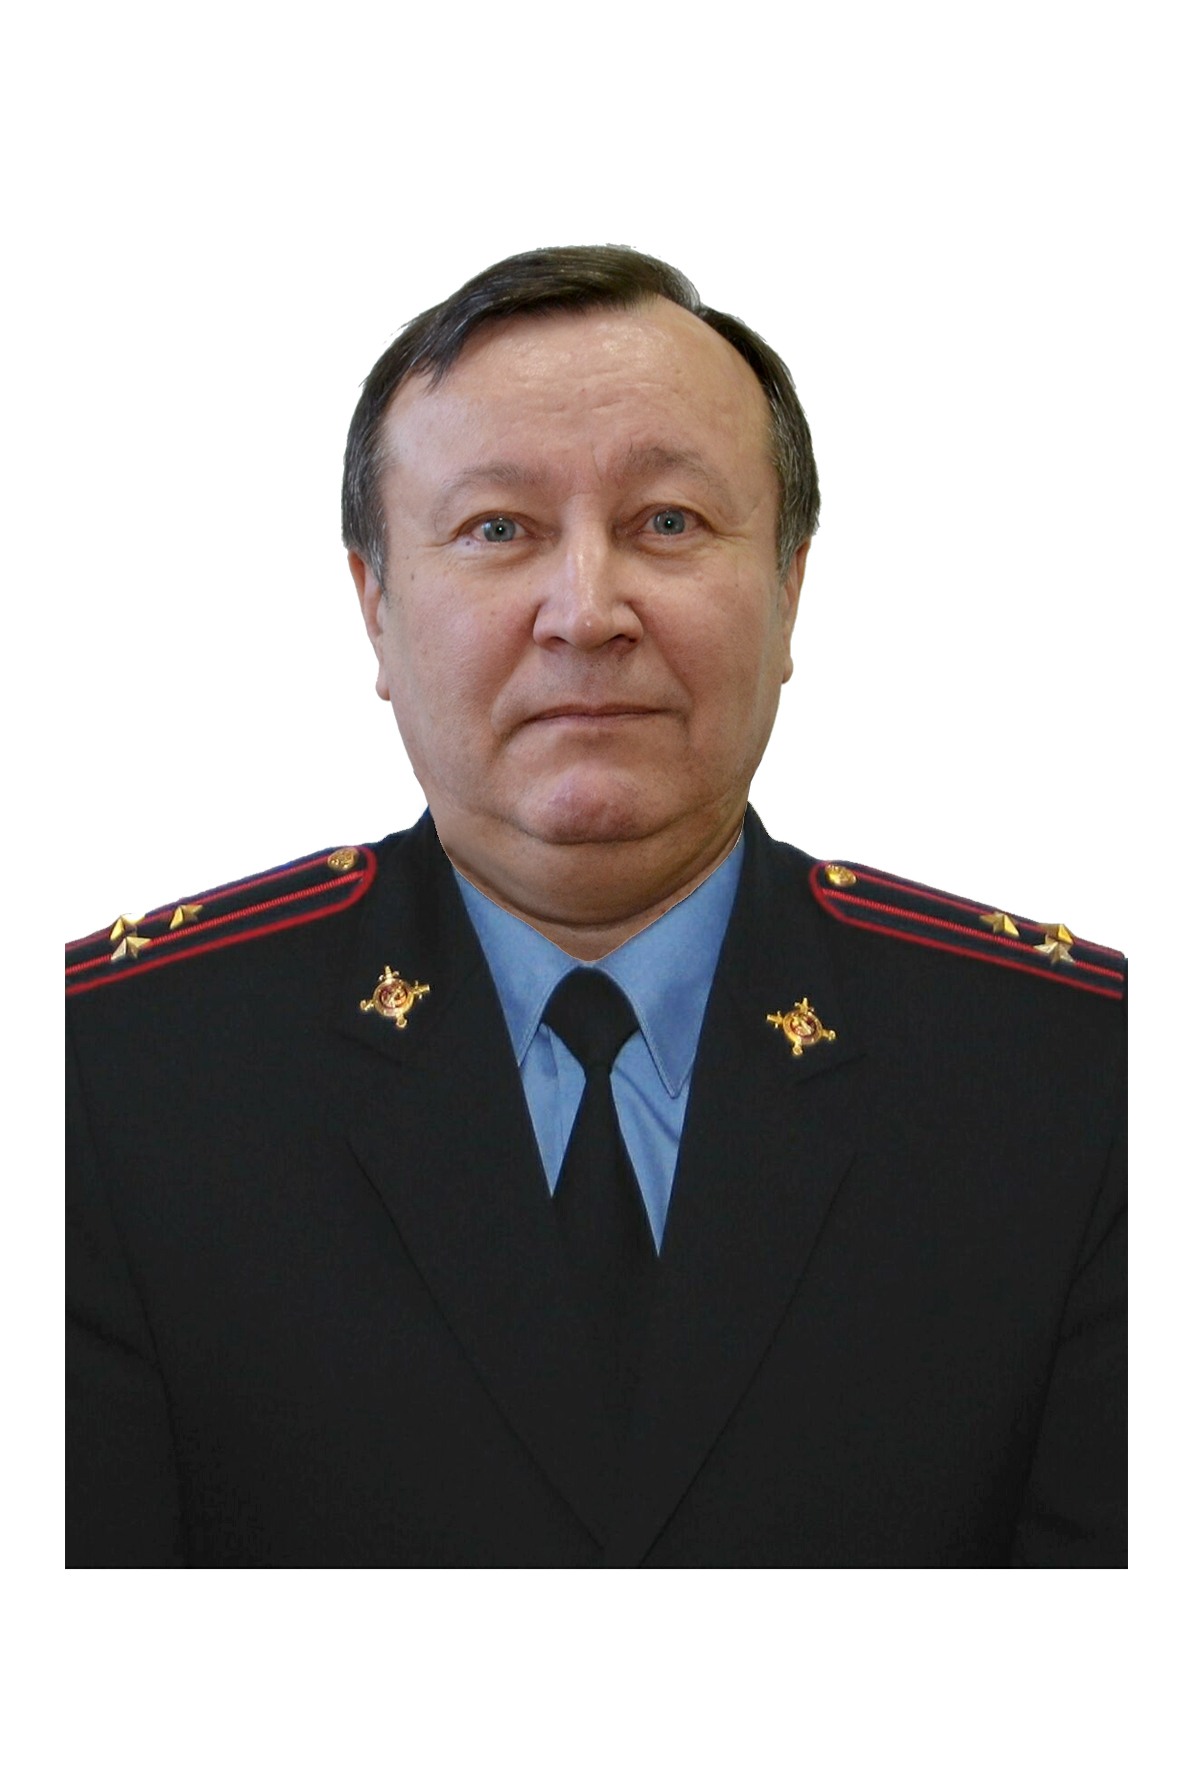                         Fedotov Sergey
            